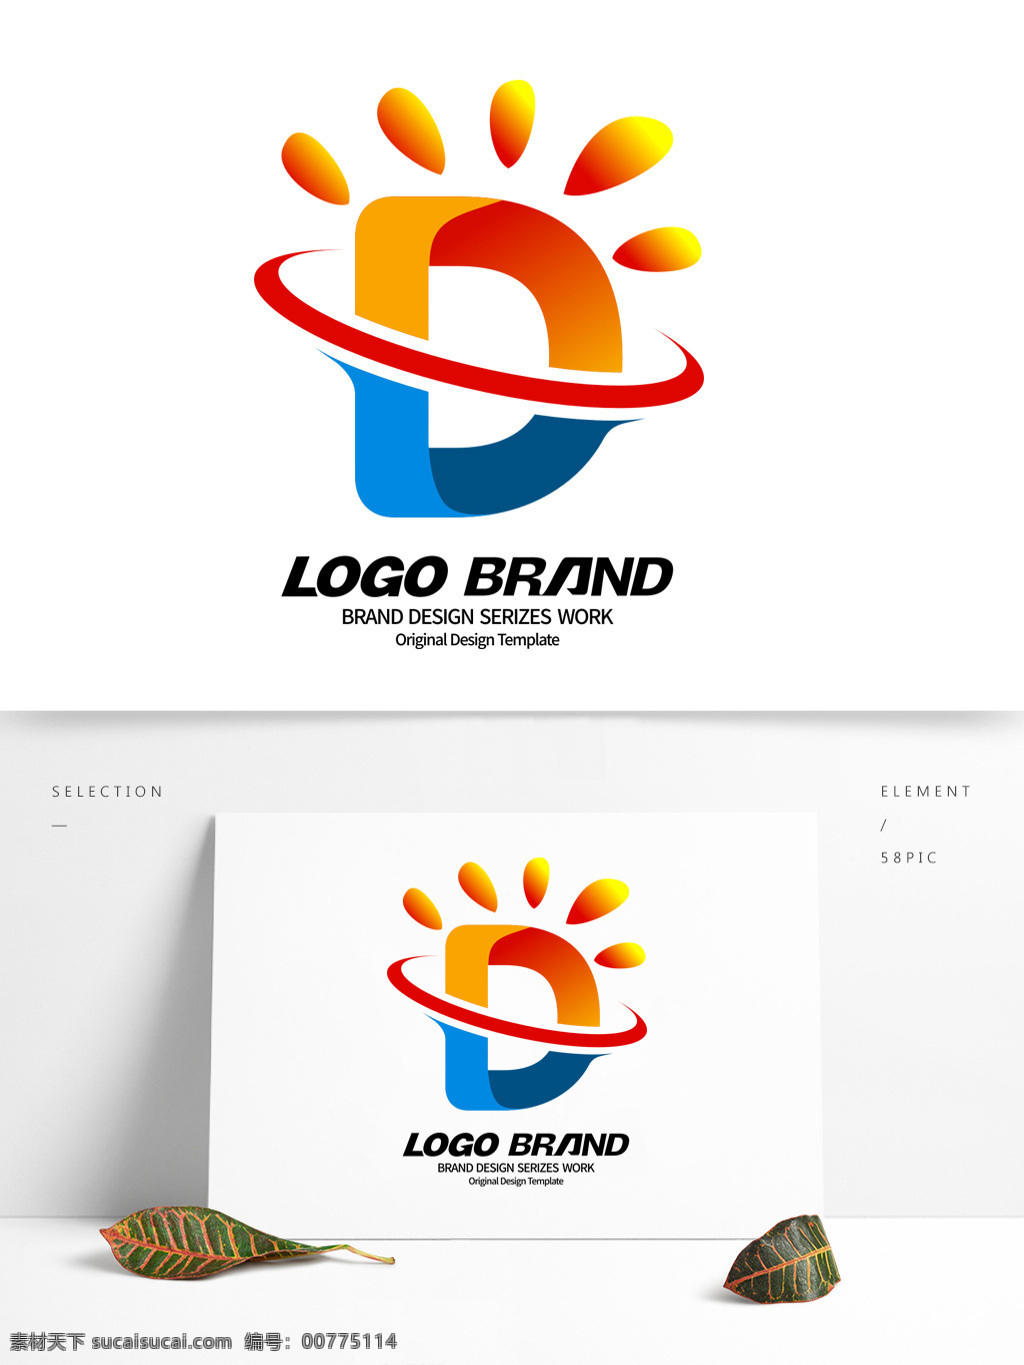 创意 蓝 黄 线条 d 字母 公司 logo 标志设计 彩妆素材 线条标志 阳光 标志 公司标志设计 企业 会徽标志设计 企业标志设计